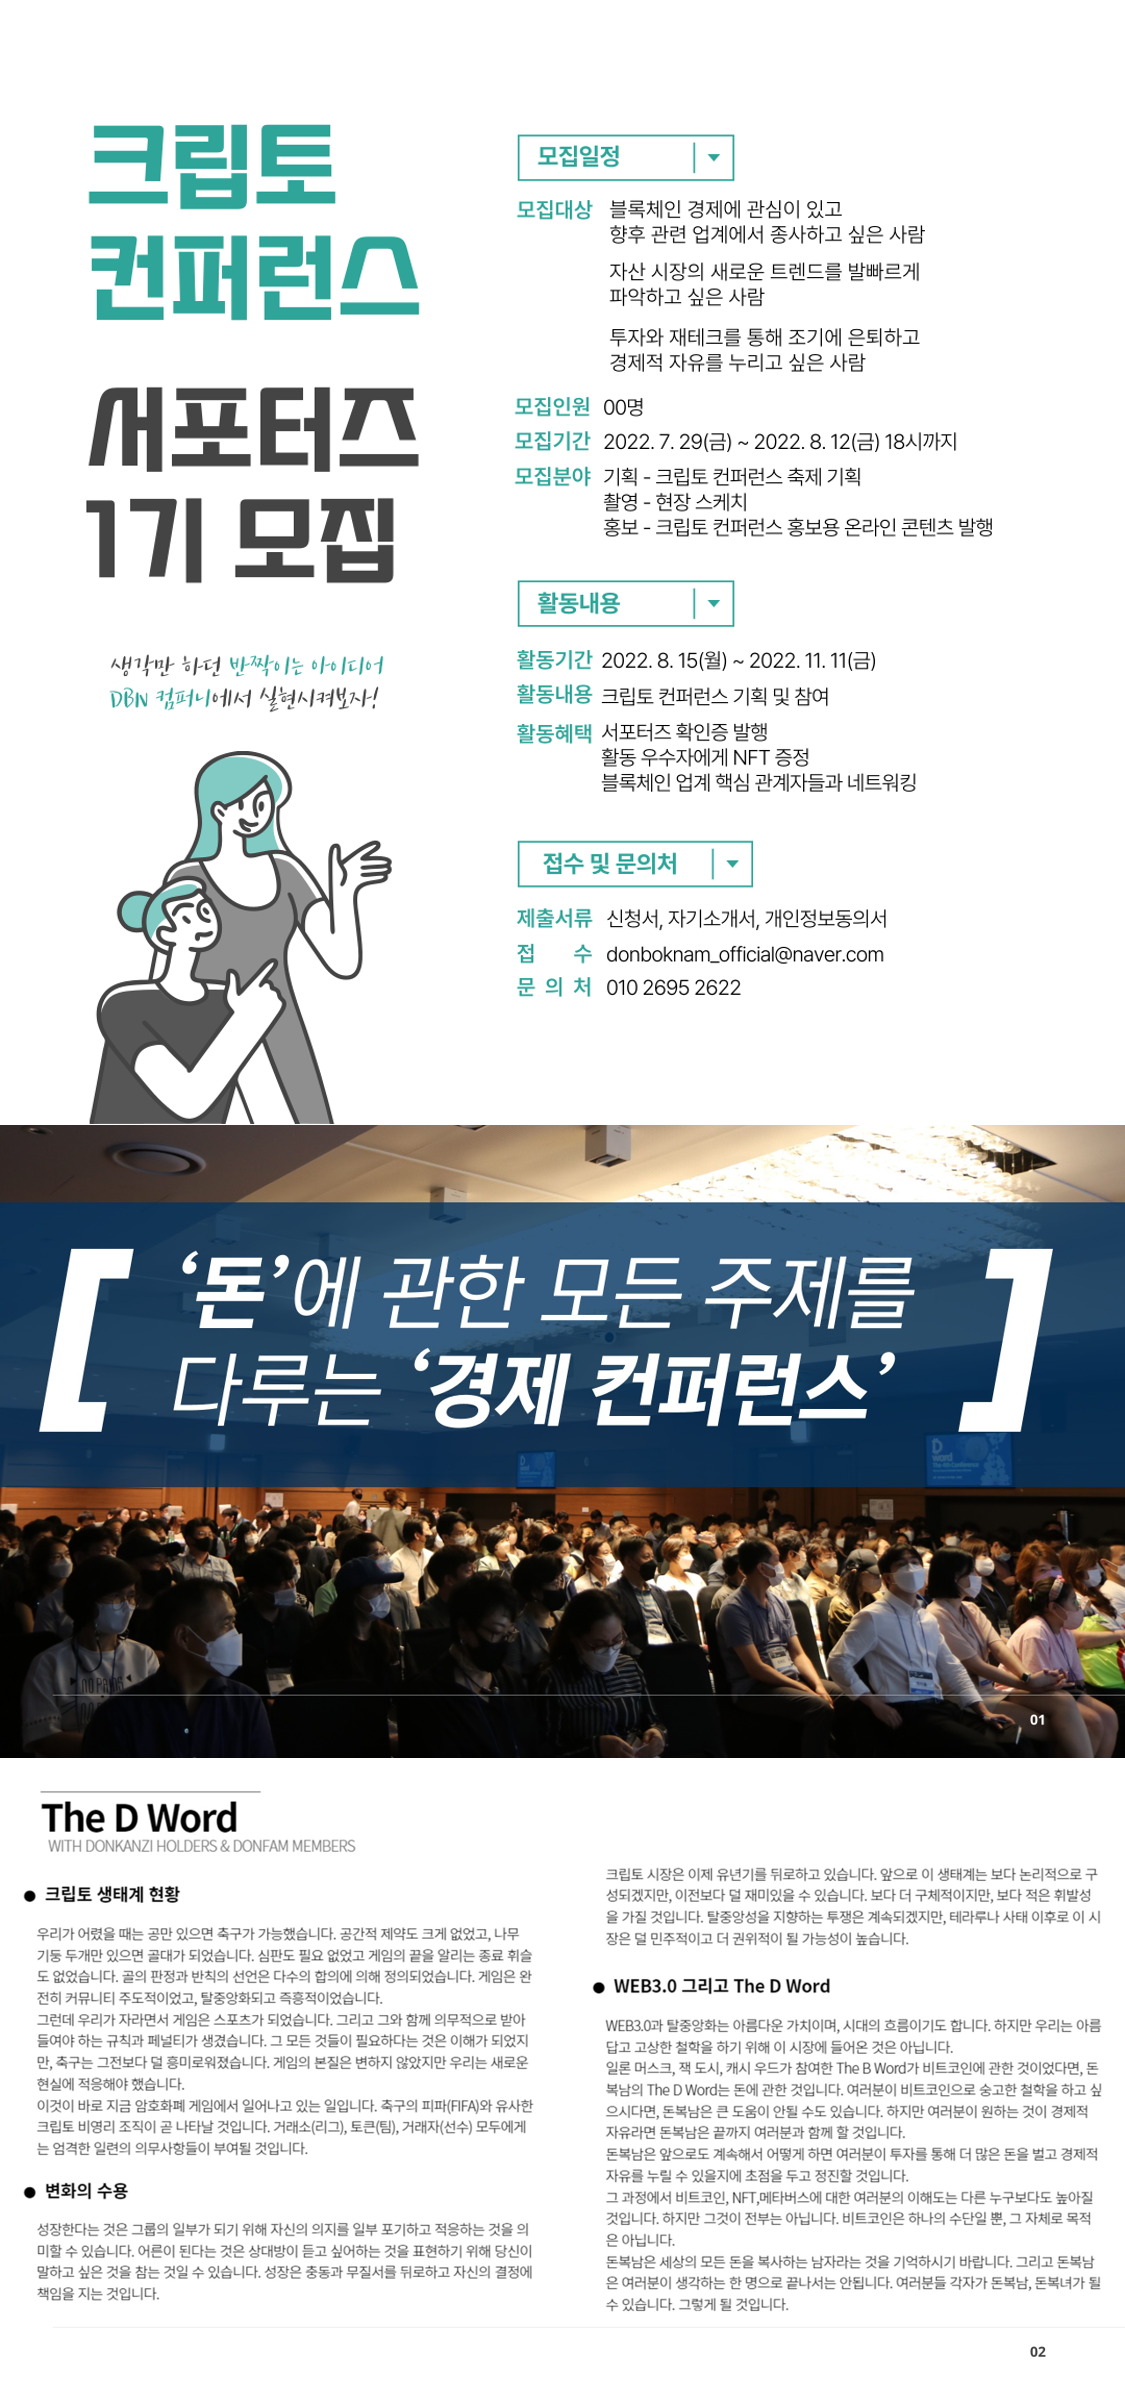 크립토 컨퍼런스 서포터즈 1기 모집